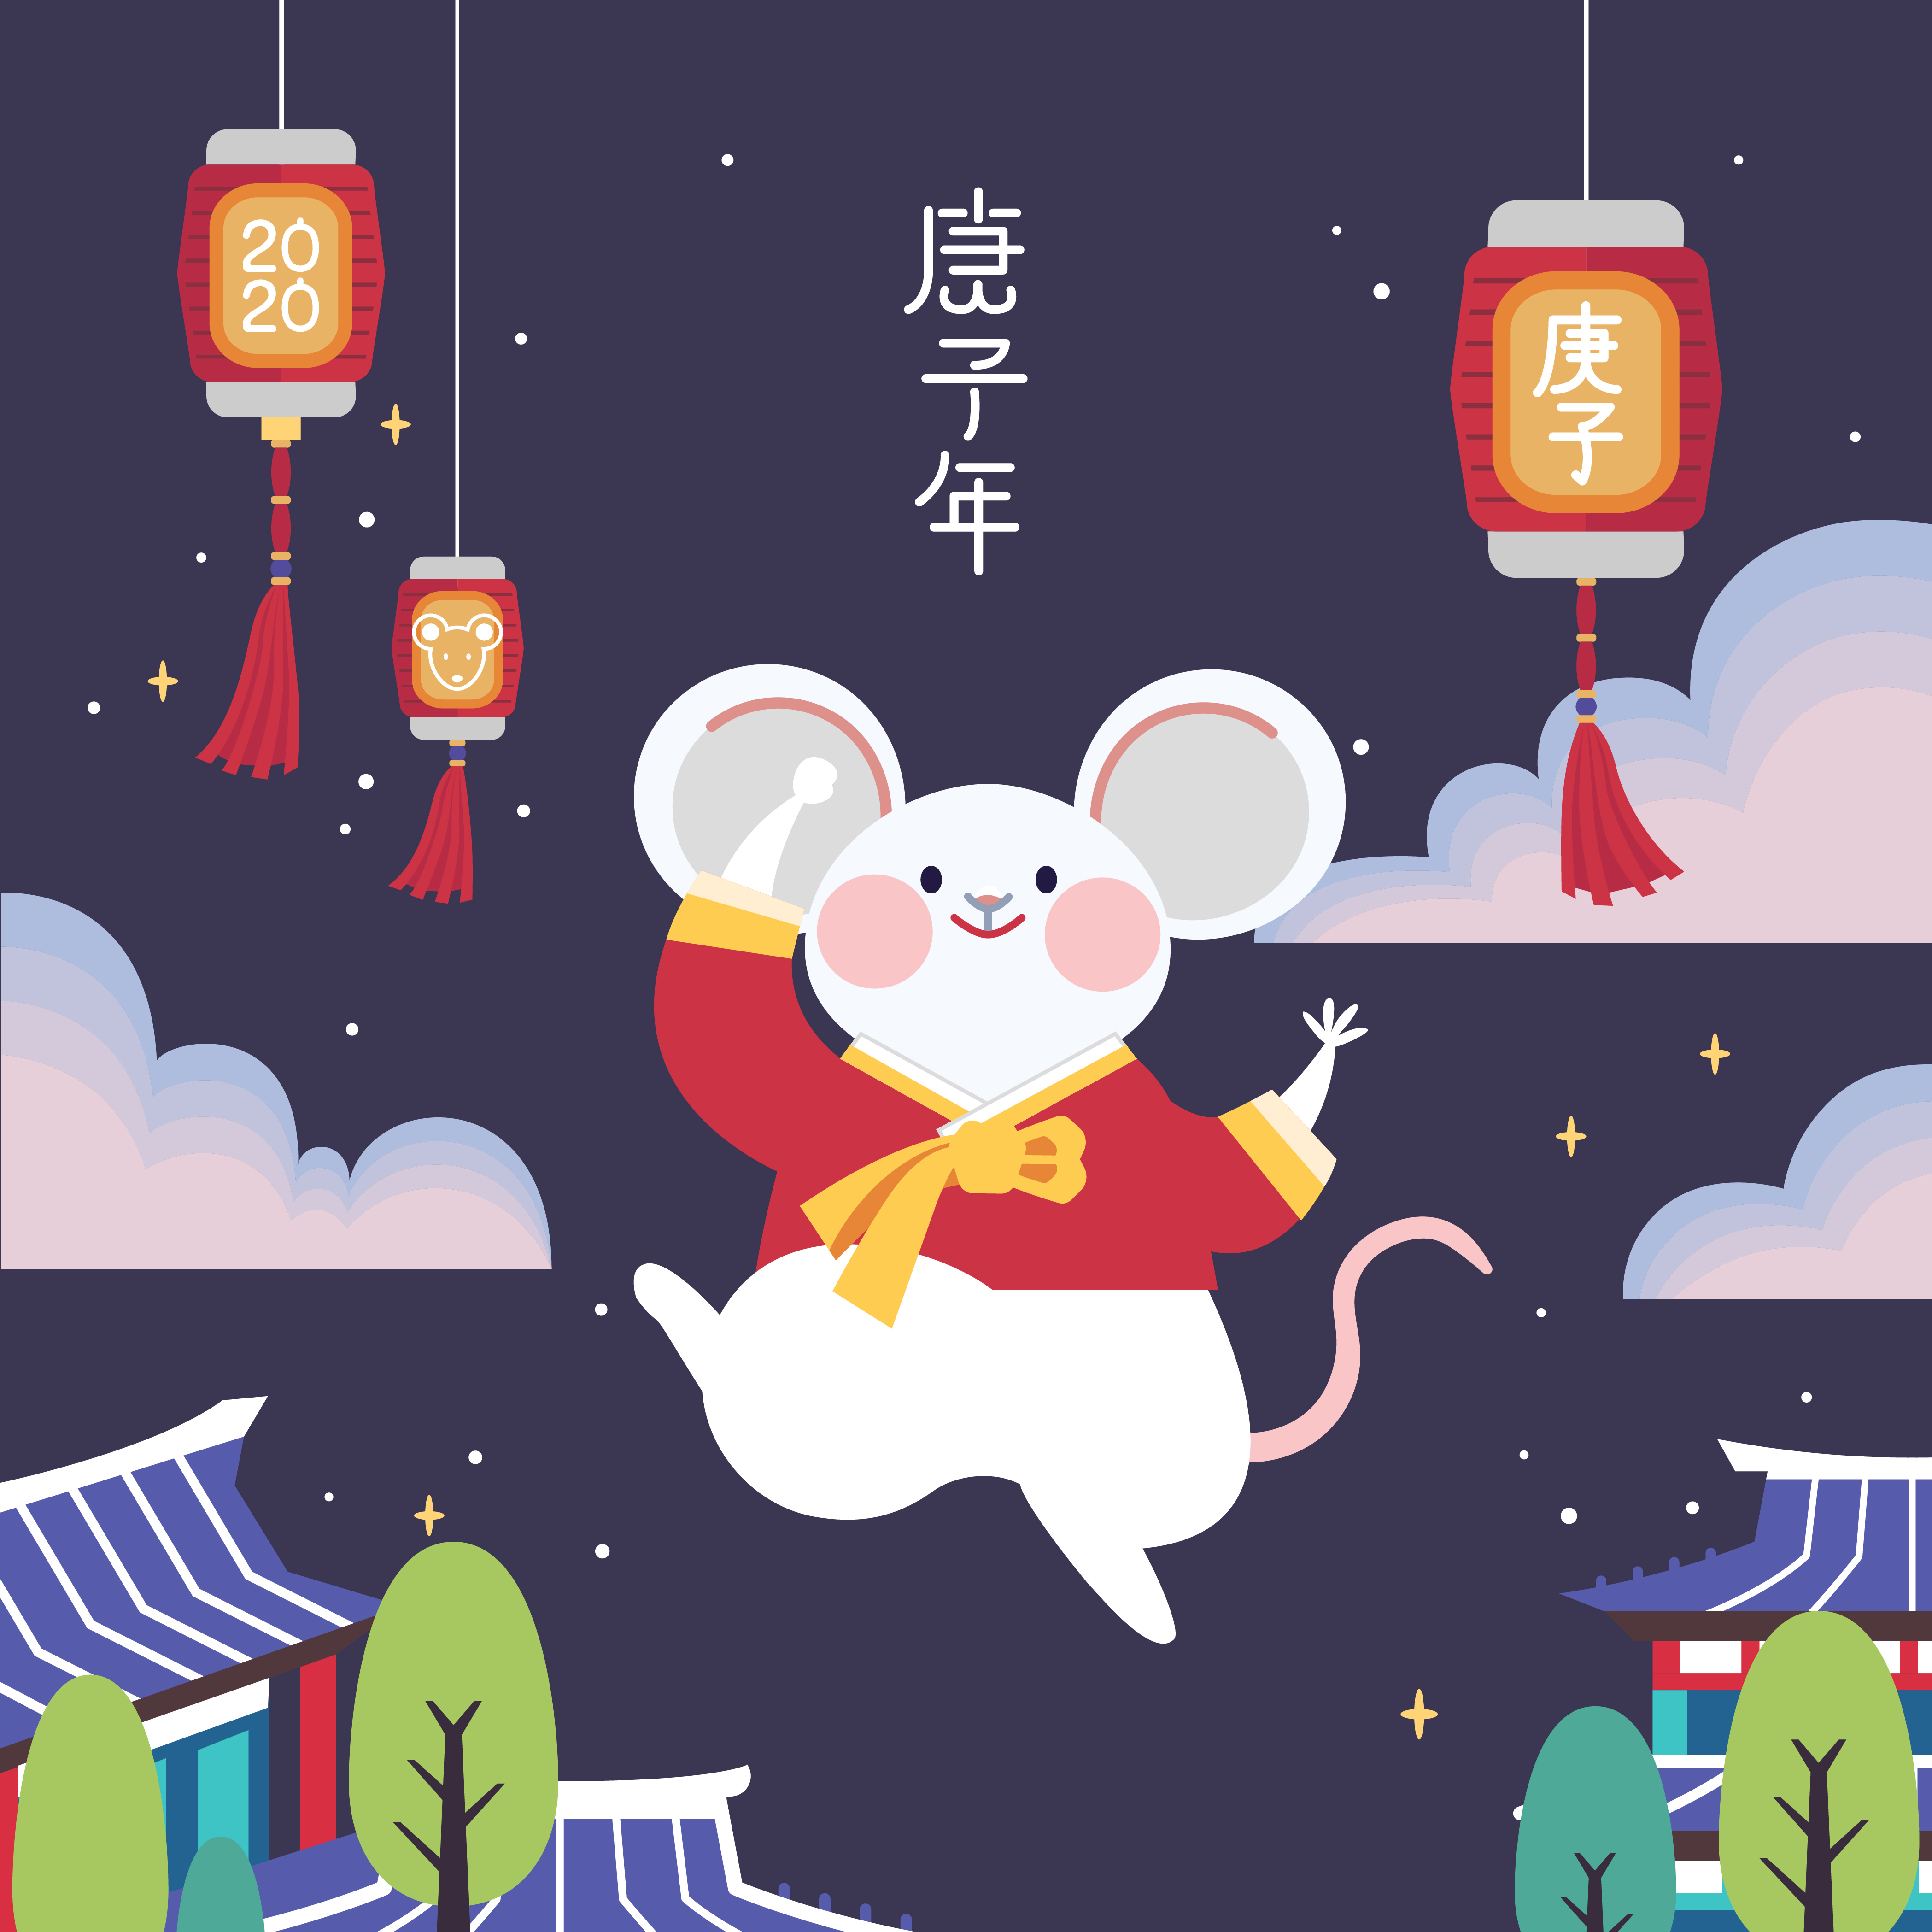 欢乐的春节新年韩式2020年卡通可爱风格鼠年生肖海报模板